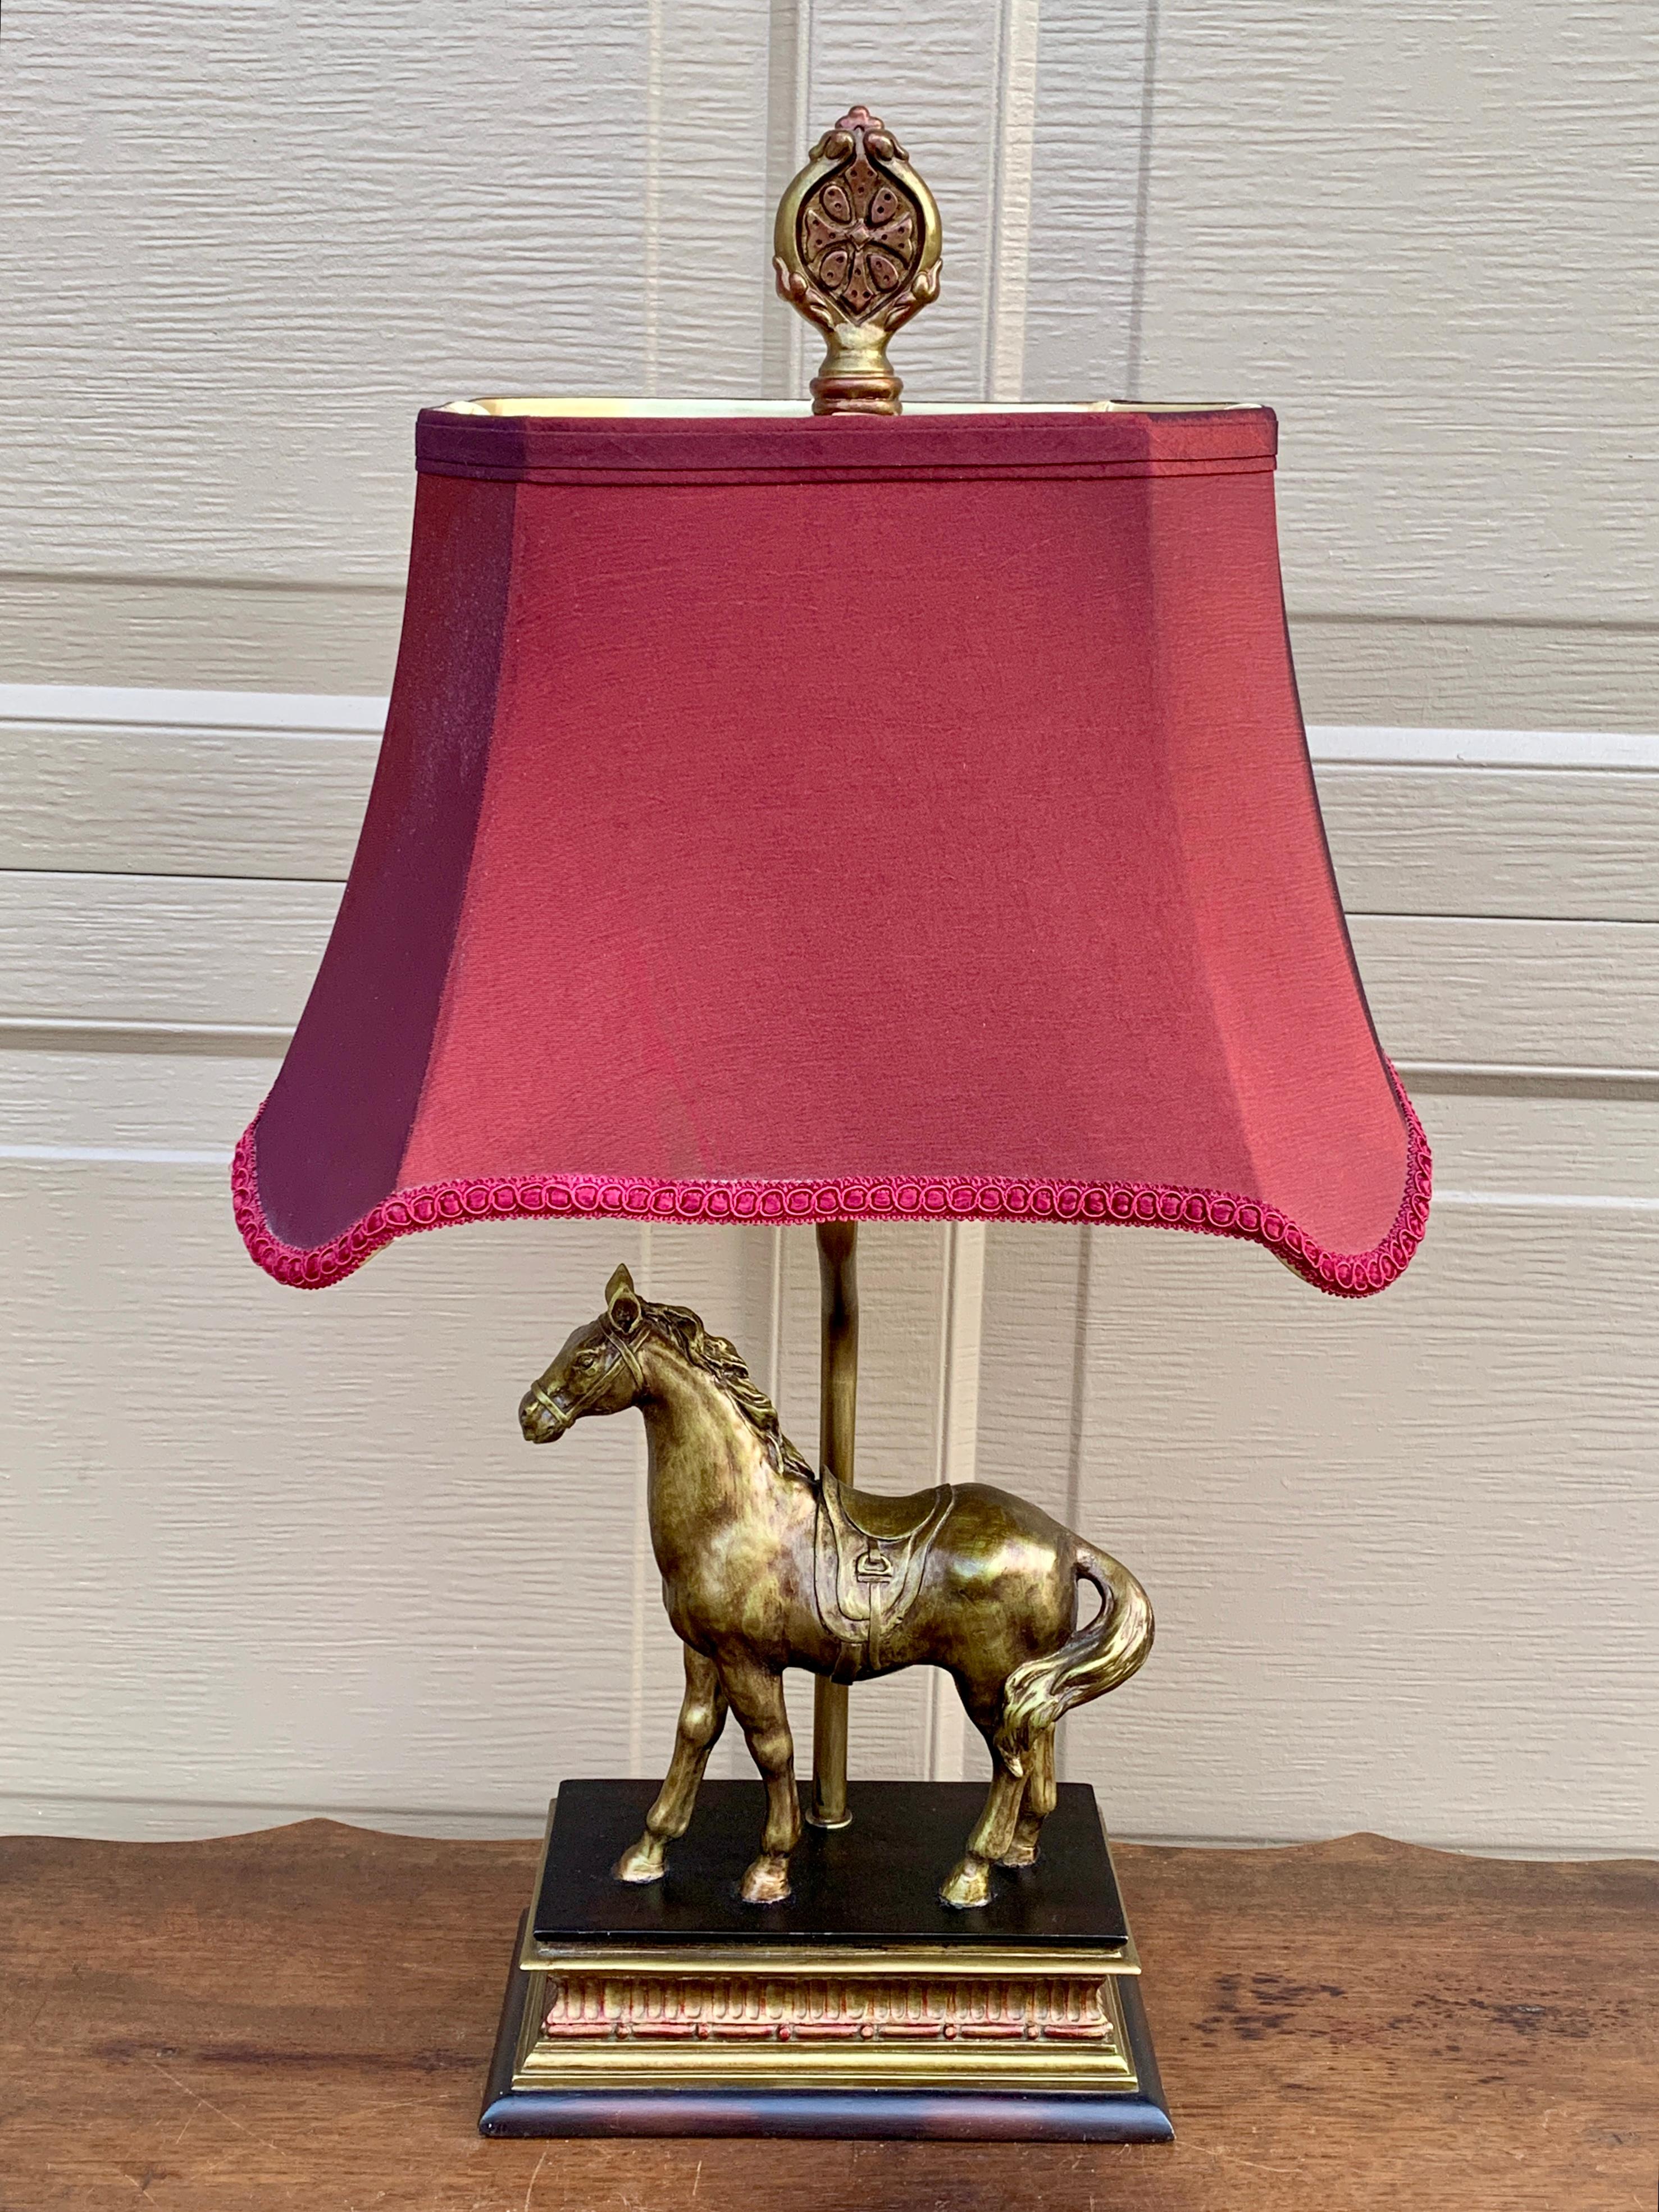 Magnifique lampe équestre de style campagne anglaise représentant un cheval et un abat-jour en tissu de couleur canneberge.

États-Unis, 21e siècle

Mesures : 13 